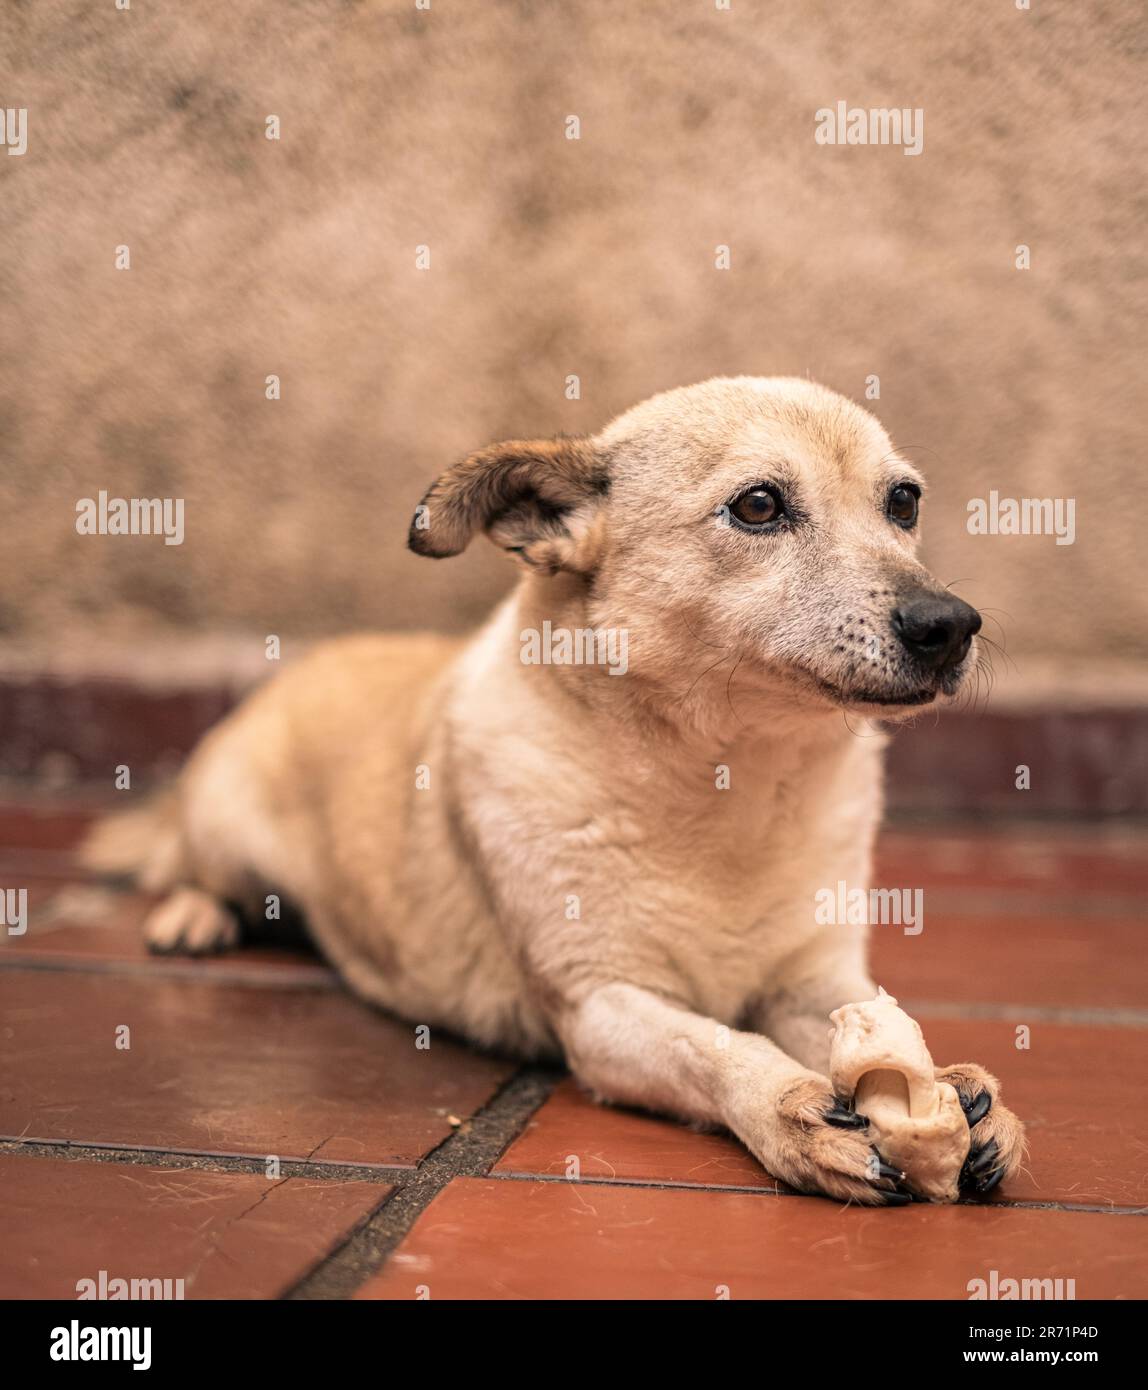 Bezauberndes Hundecharisma: Ein sanfter, freundlicher und fesselnder Hund, der Verspieltheit und unwiderstehliche Zuneigung ausstrahlt Stockfoto